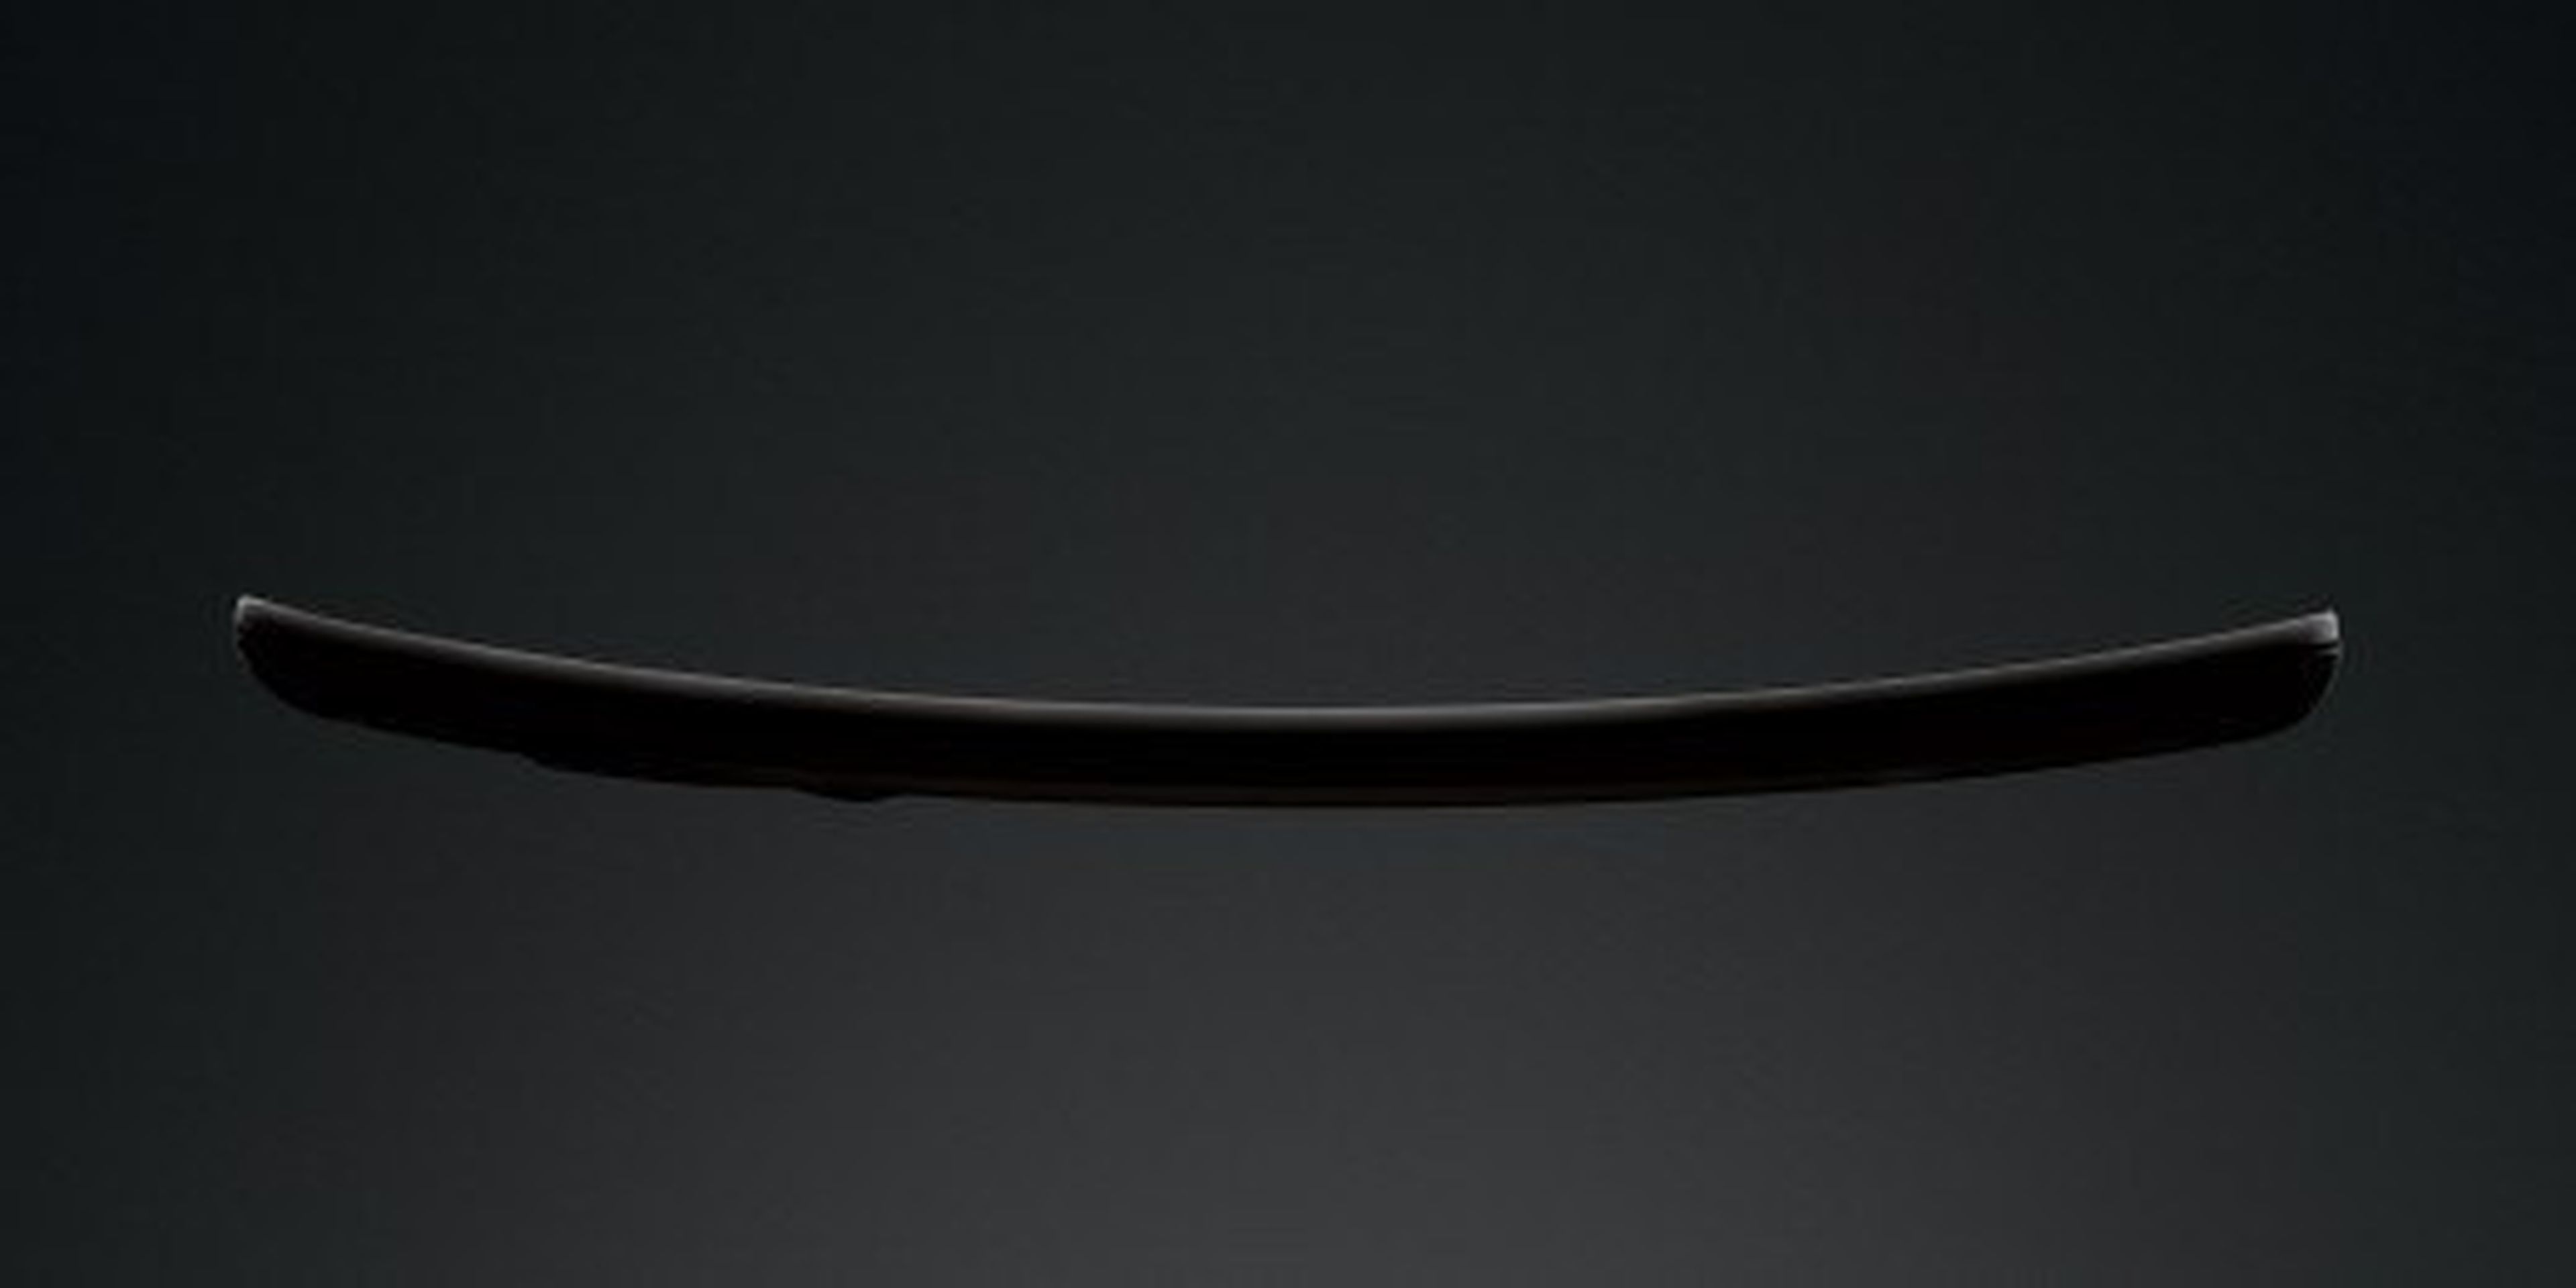 LG G Flex: Se filtran imágenes del primer móvil curvo de LG